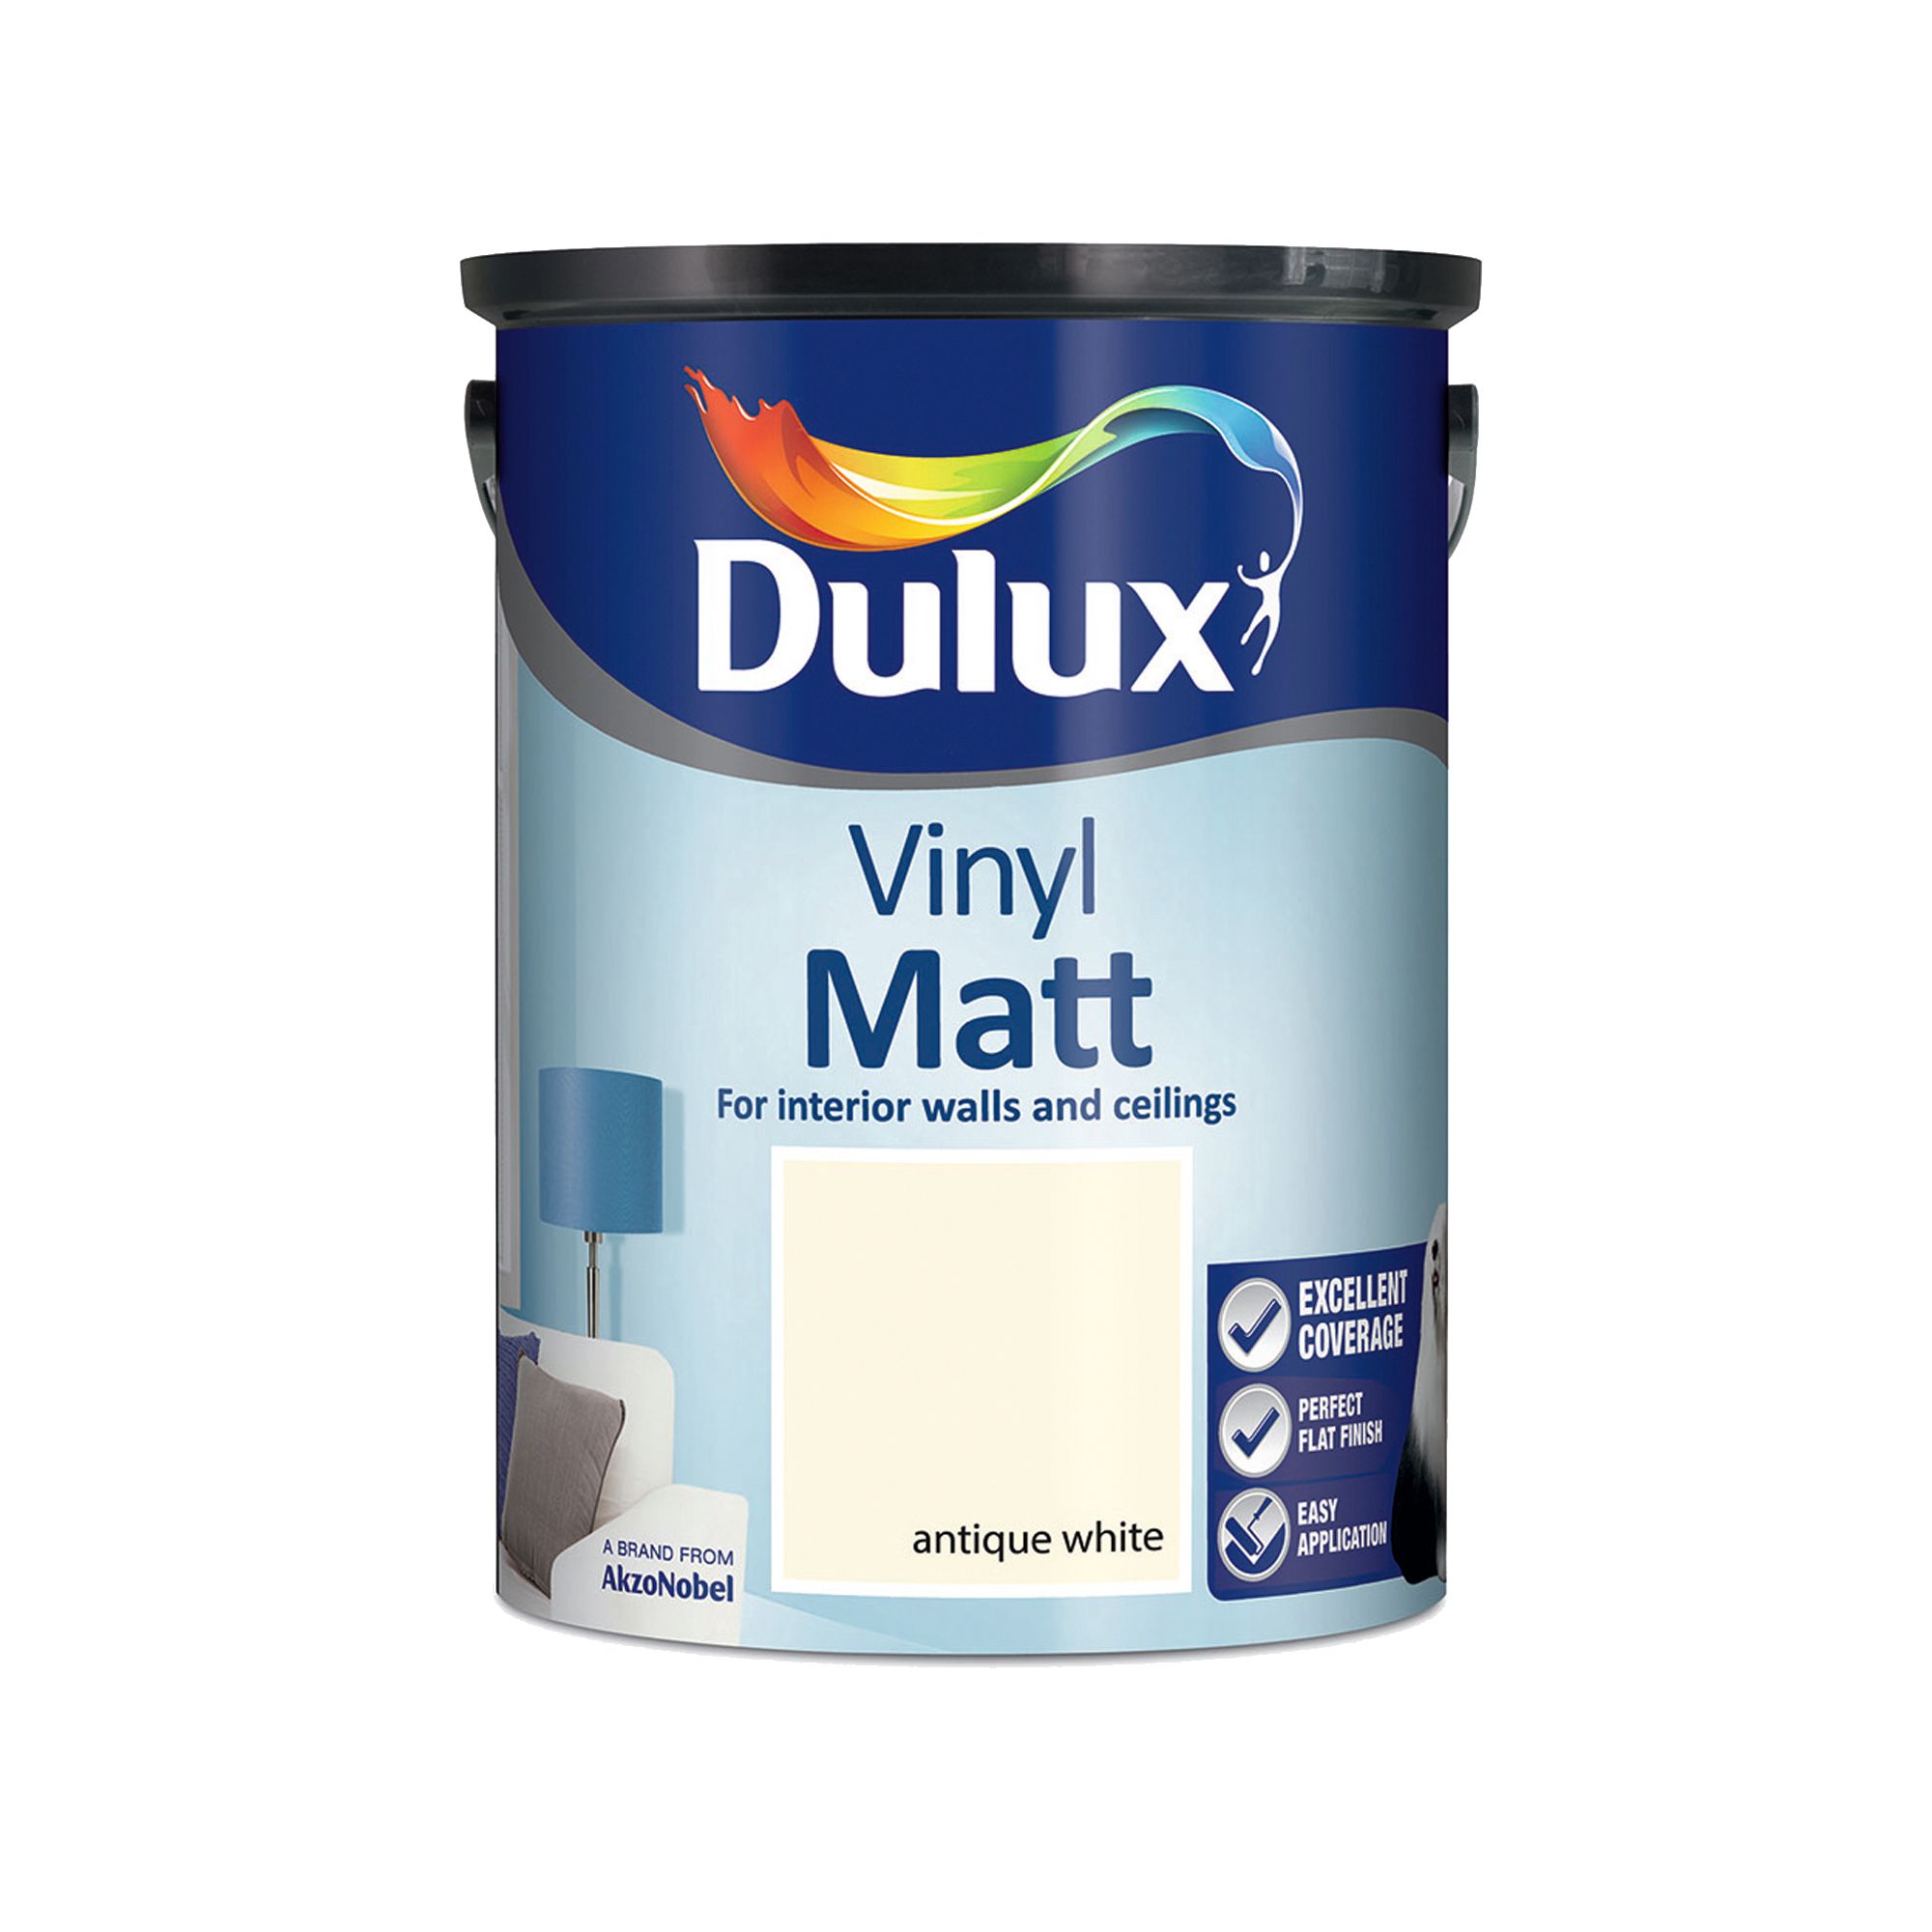 Dulux Antique white Vinyl matt Emulsion paint, 5L